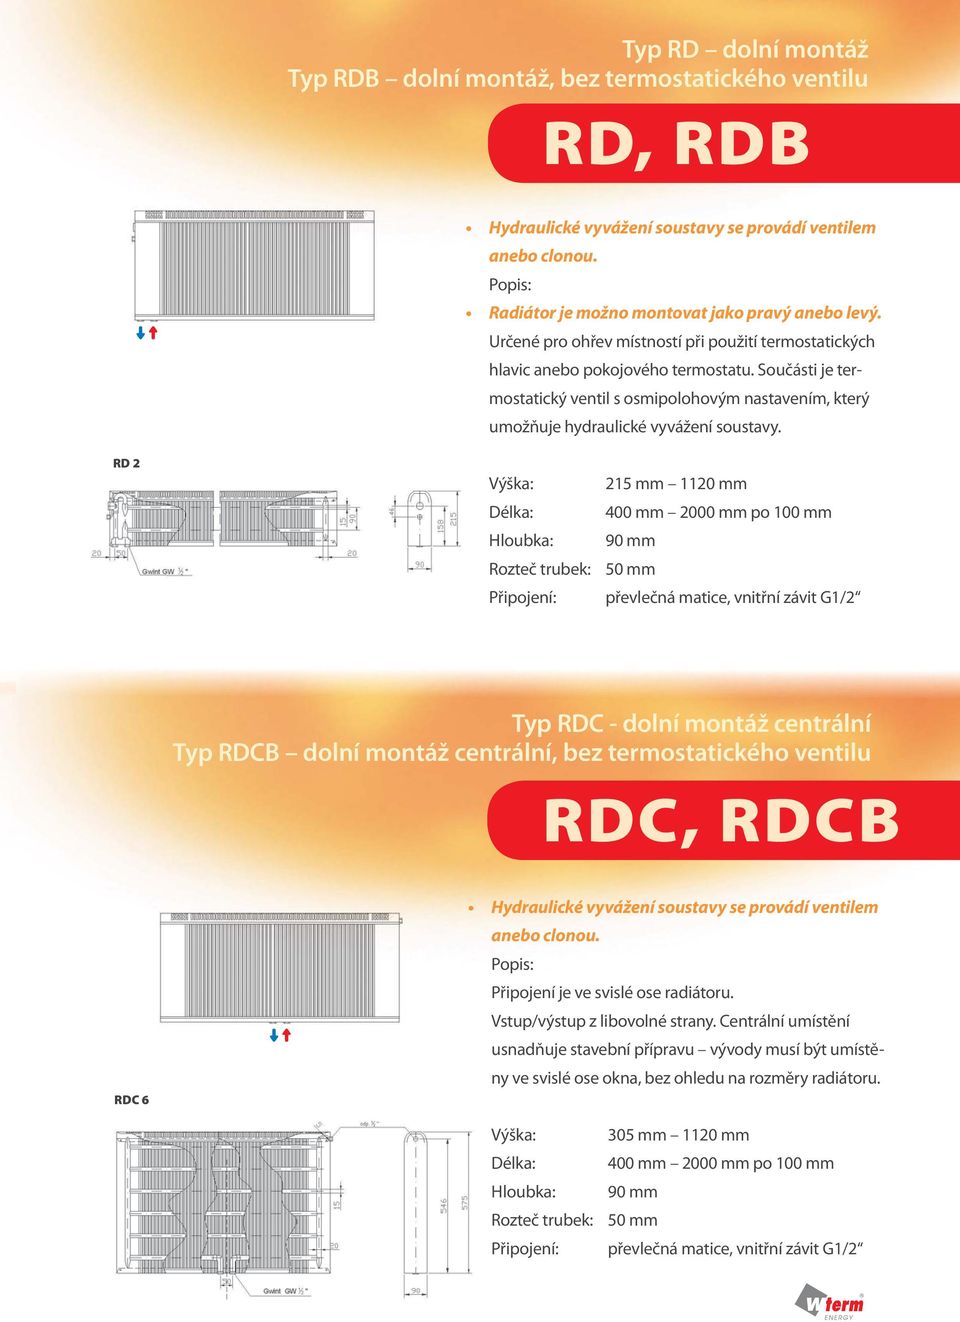 RD 2 Výška: 215 mm 1120 mm Délka: 400 mm 2000 mm po 100 mm Hloubka: 90 mm Rozteč trubek: 50 mm Připojení: převlečná matice, vnitřní závit G1/2 Typ RDC - dolní montáž centrální Typ RDCB dolní montáž